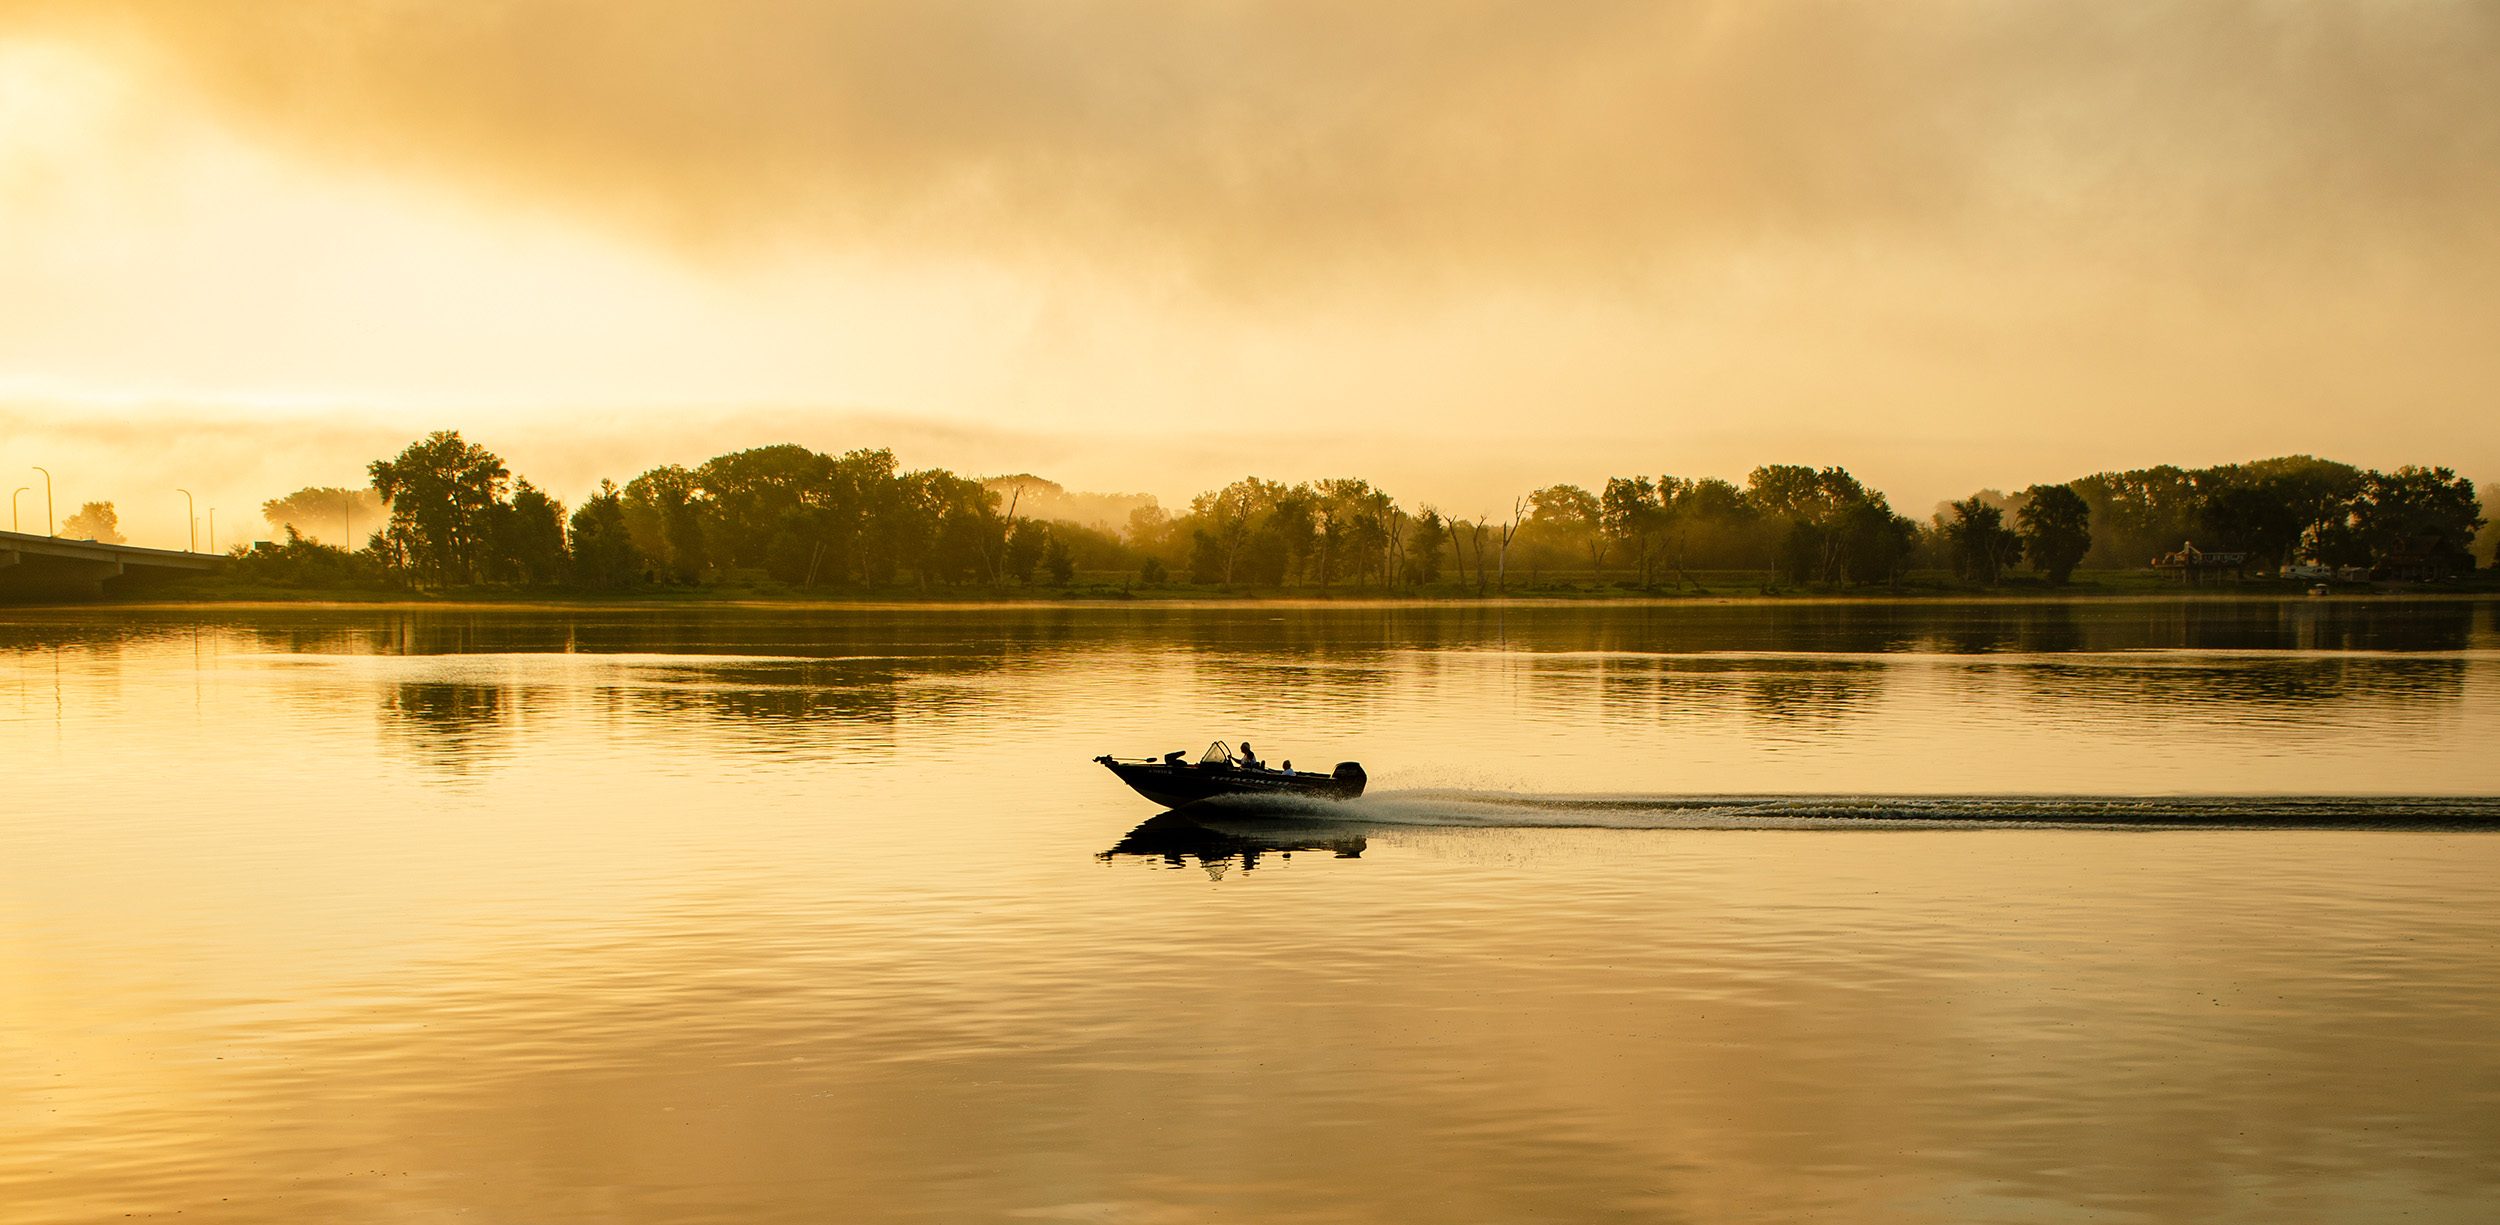 Boat on a lake at sunrise in Burlington, Iowa